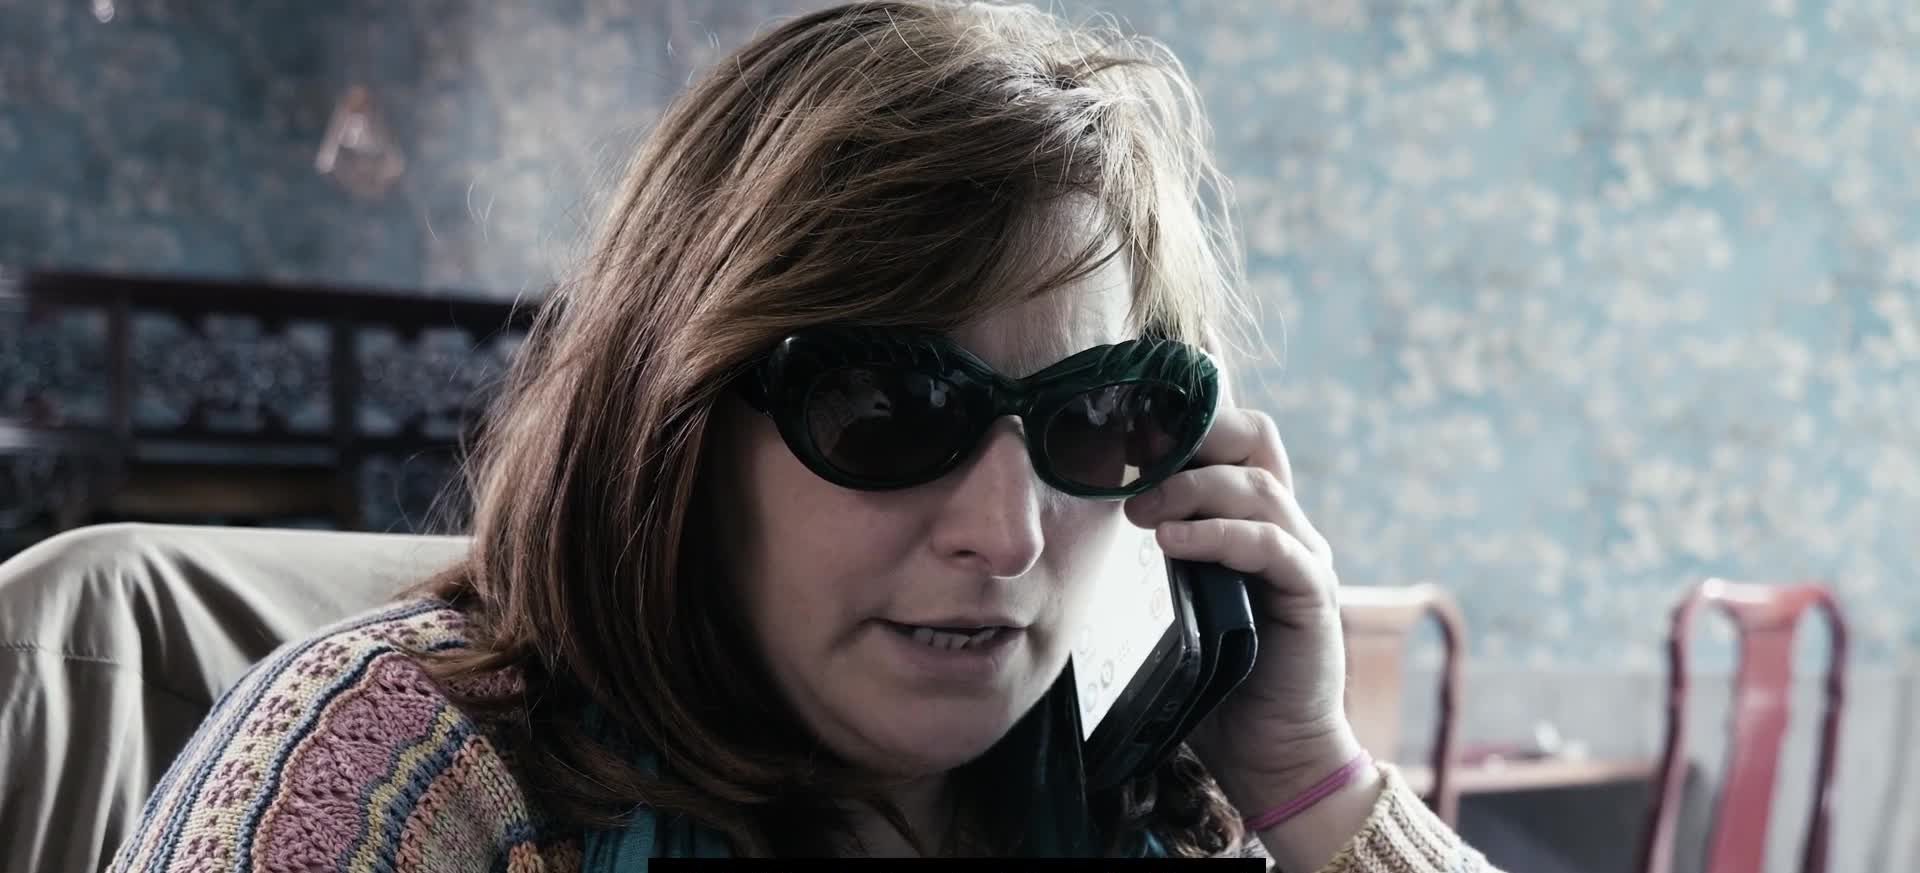 دانلود فیلم La donna dello smartphone 2020